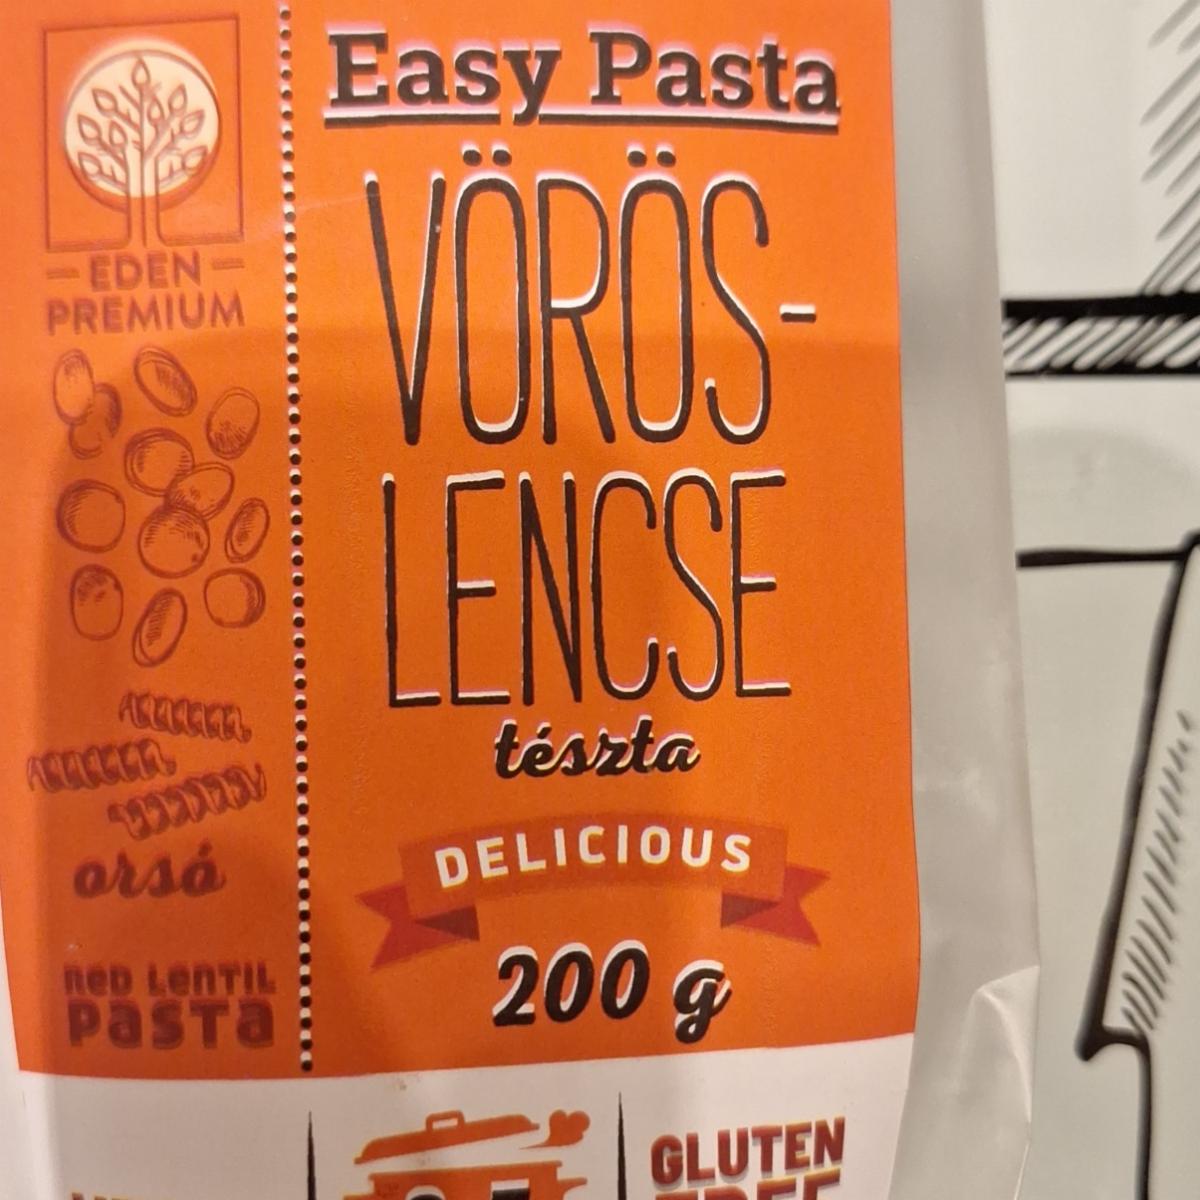 Képek - Easy pasta vörös-lencse tészta delicious Eden Premium